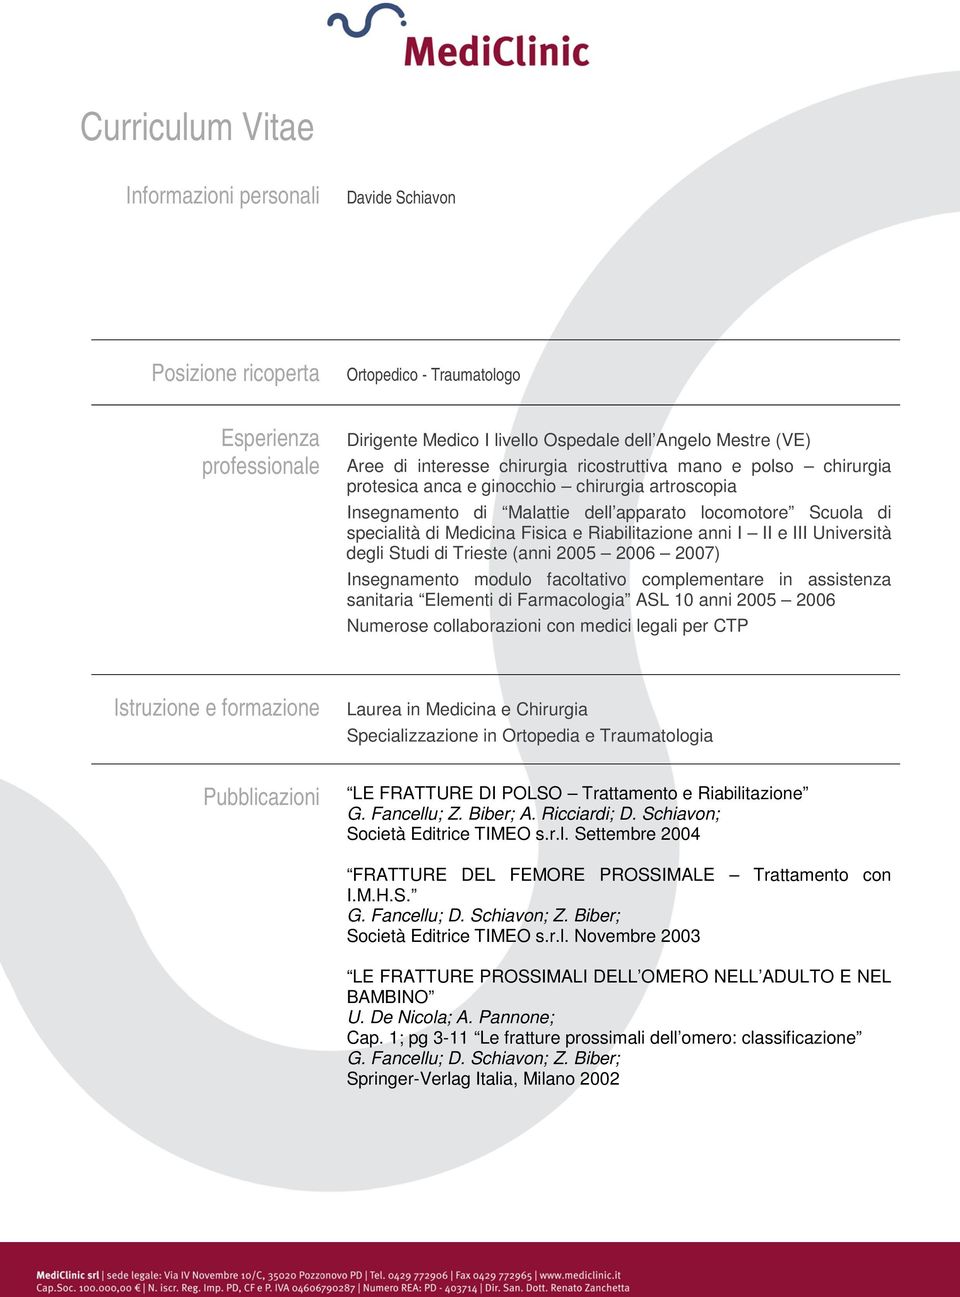 Riabilitazione anni I II e III Università degli Studi di Trieste (anni 2005 2006 2007) Insegnamento modulo facoltativo complementare in assistenza sanitaria Elementi di Farmacologia ASL 10 anni 2005